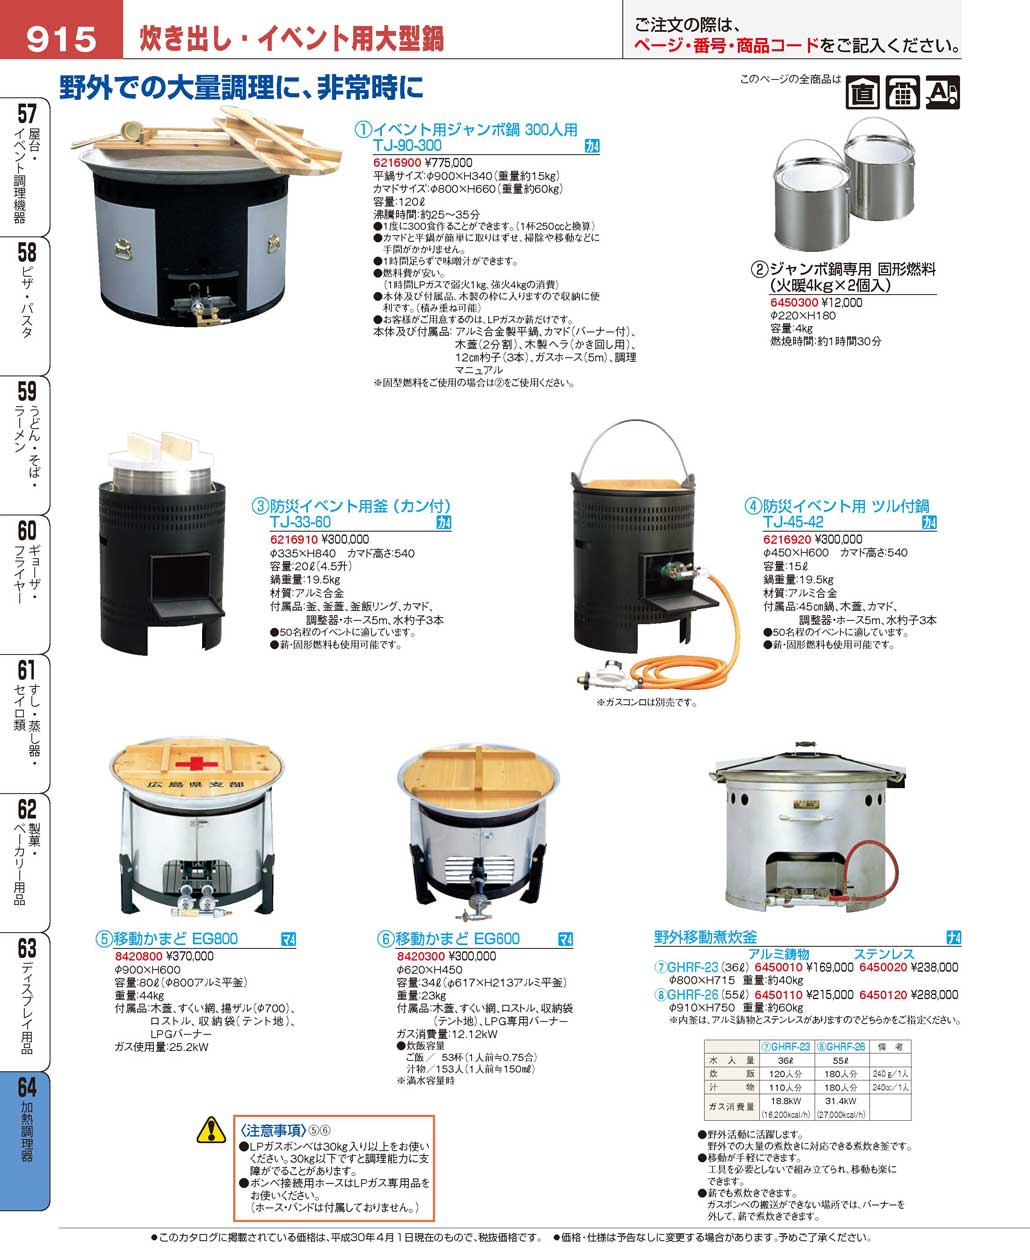 通販 大阪なにわの 鍋工房業務用湯煎式おでん鍋マッチ点火 ガス台付 #15